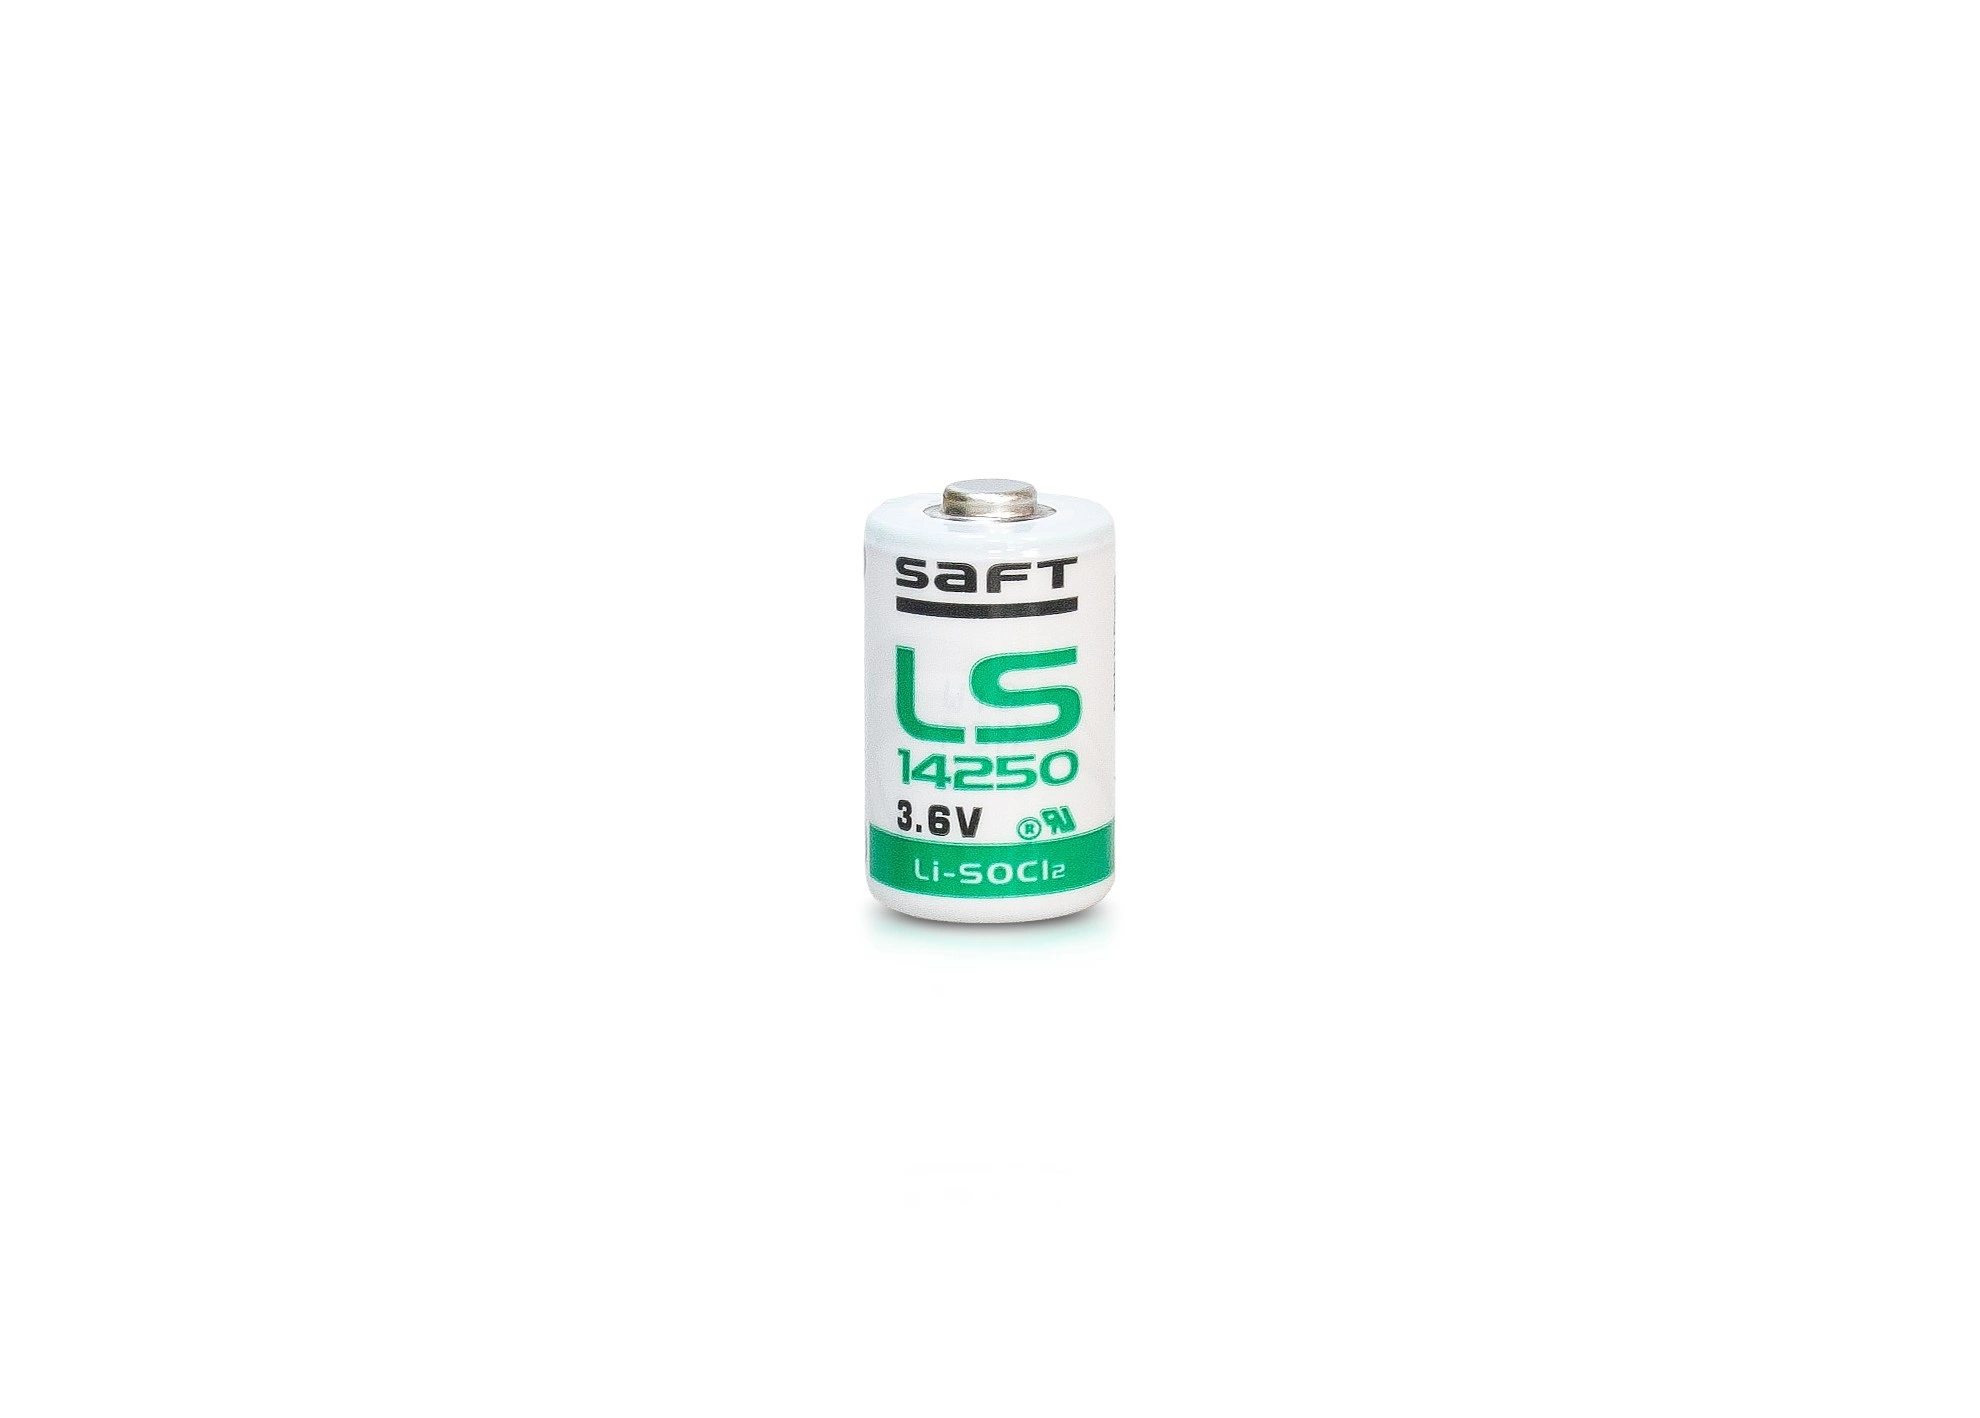 Batéria Lithium LS 14250, 3,6V, 1/2AA, SAFT